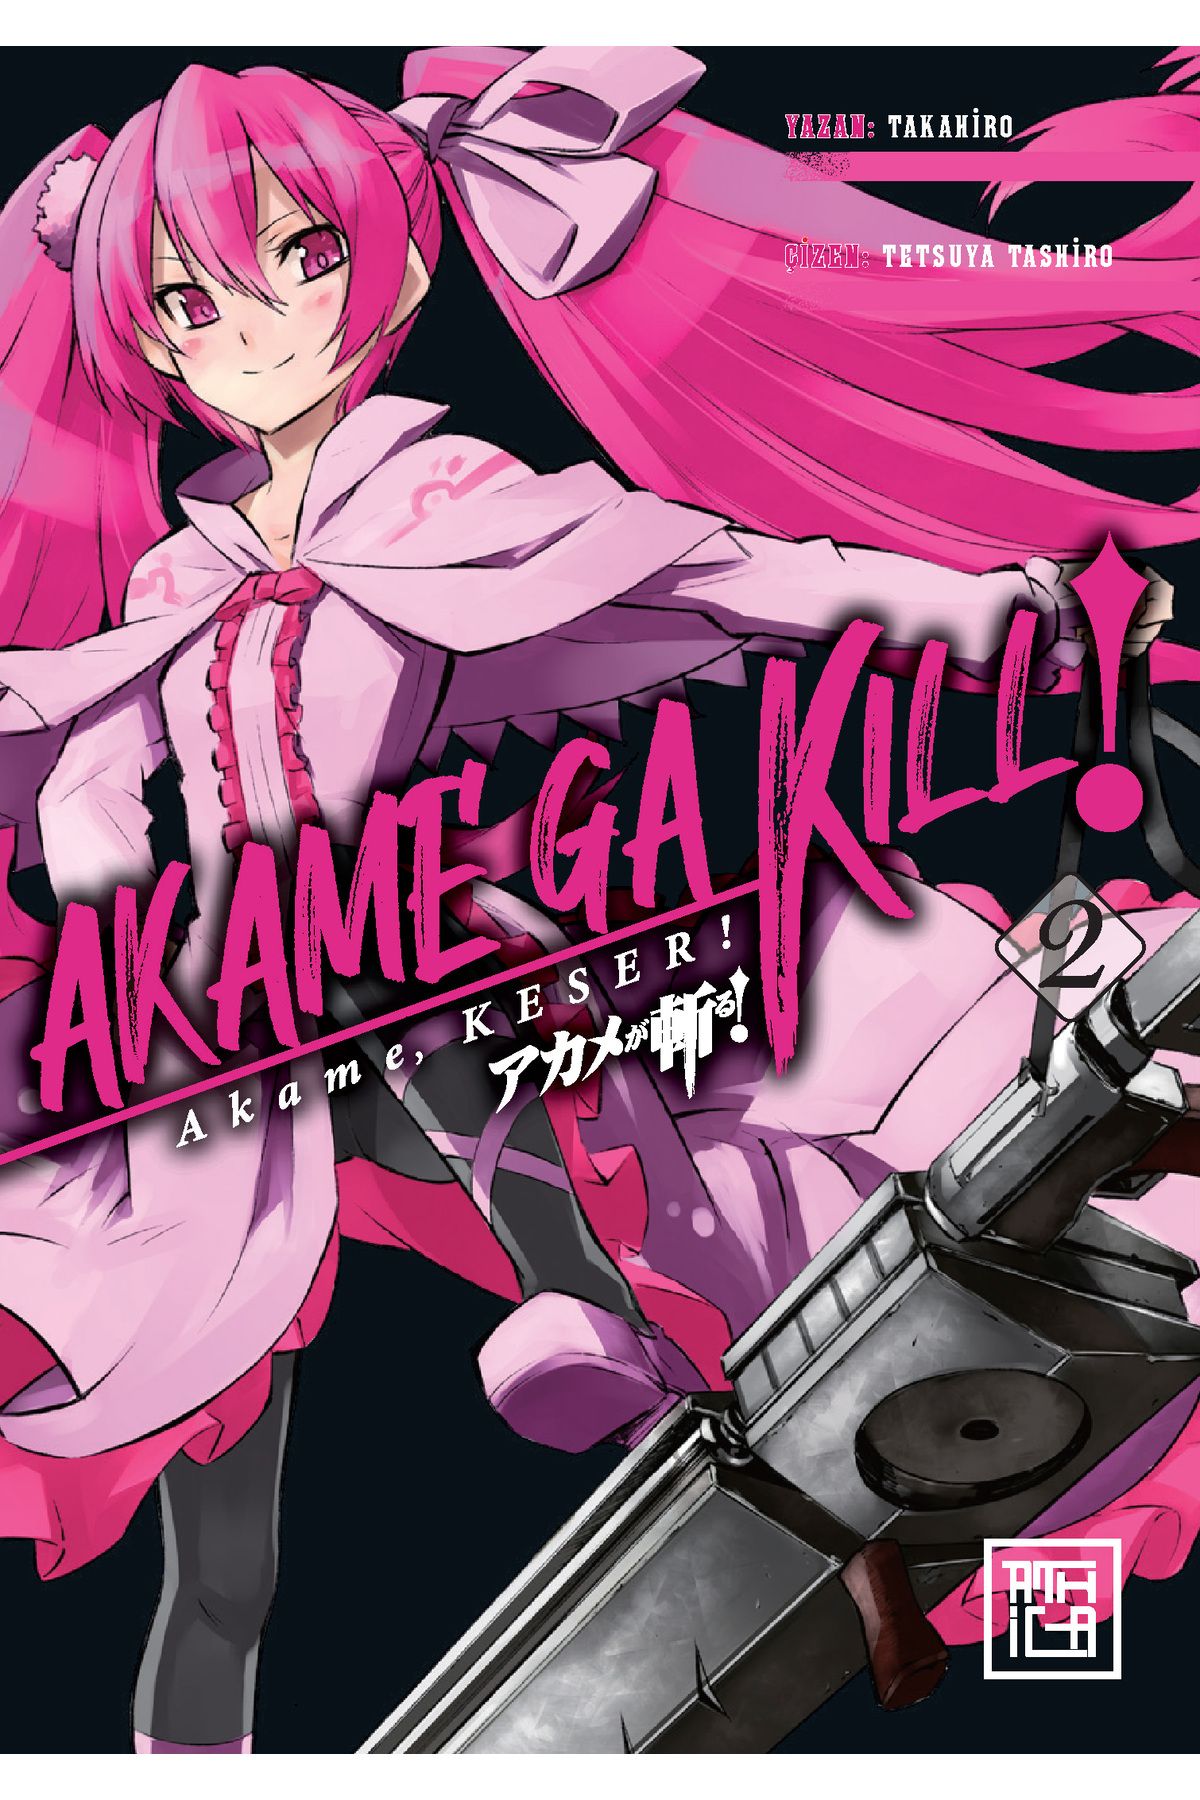 Destek Yayınları Akame Keser 2-akame Ga Kill Vol 2